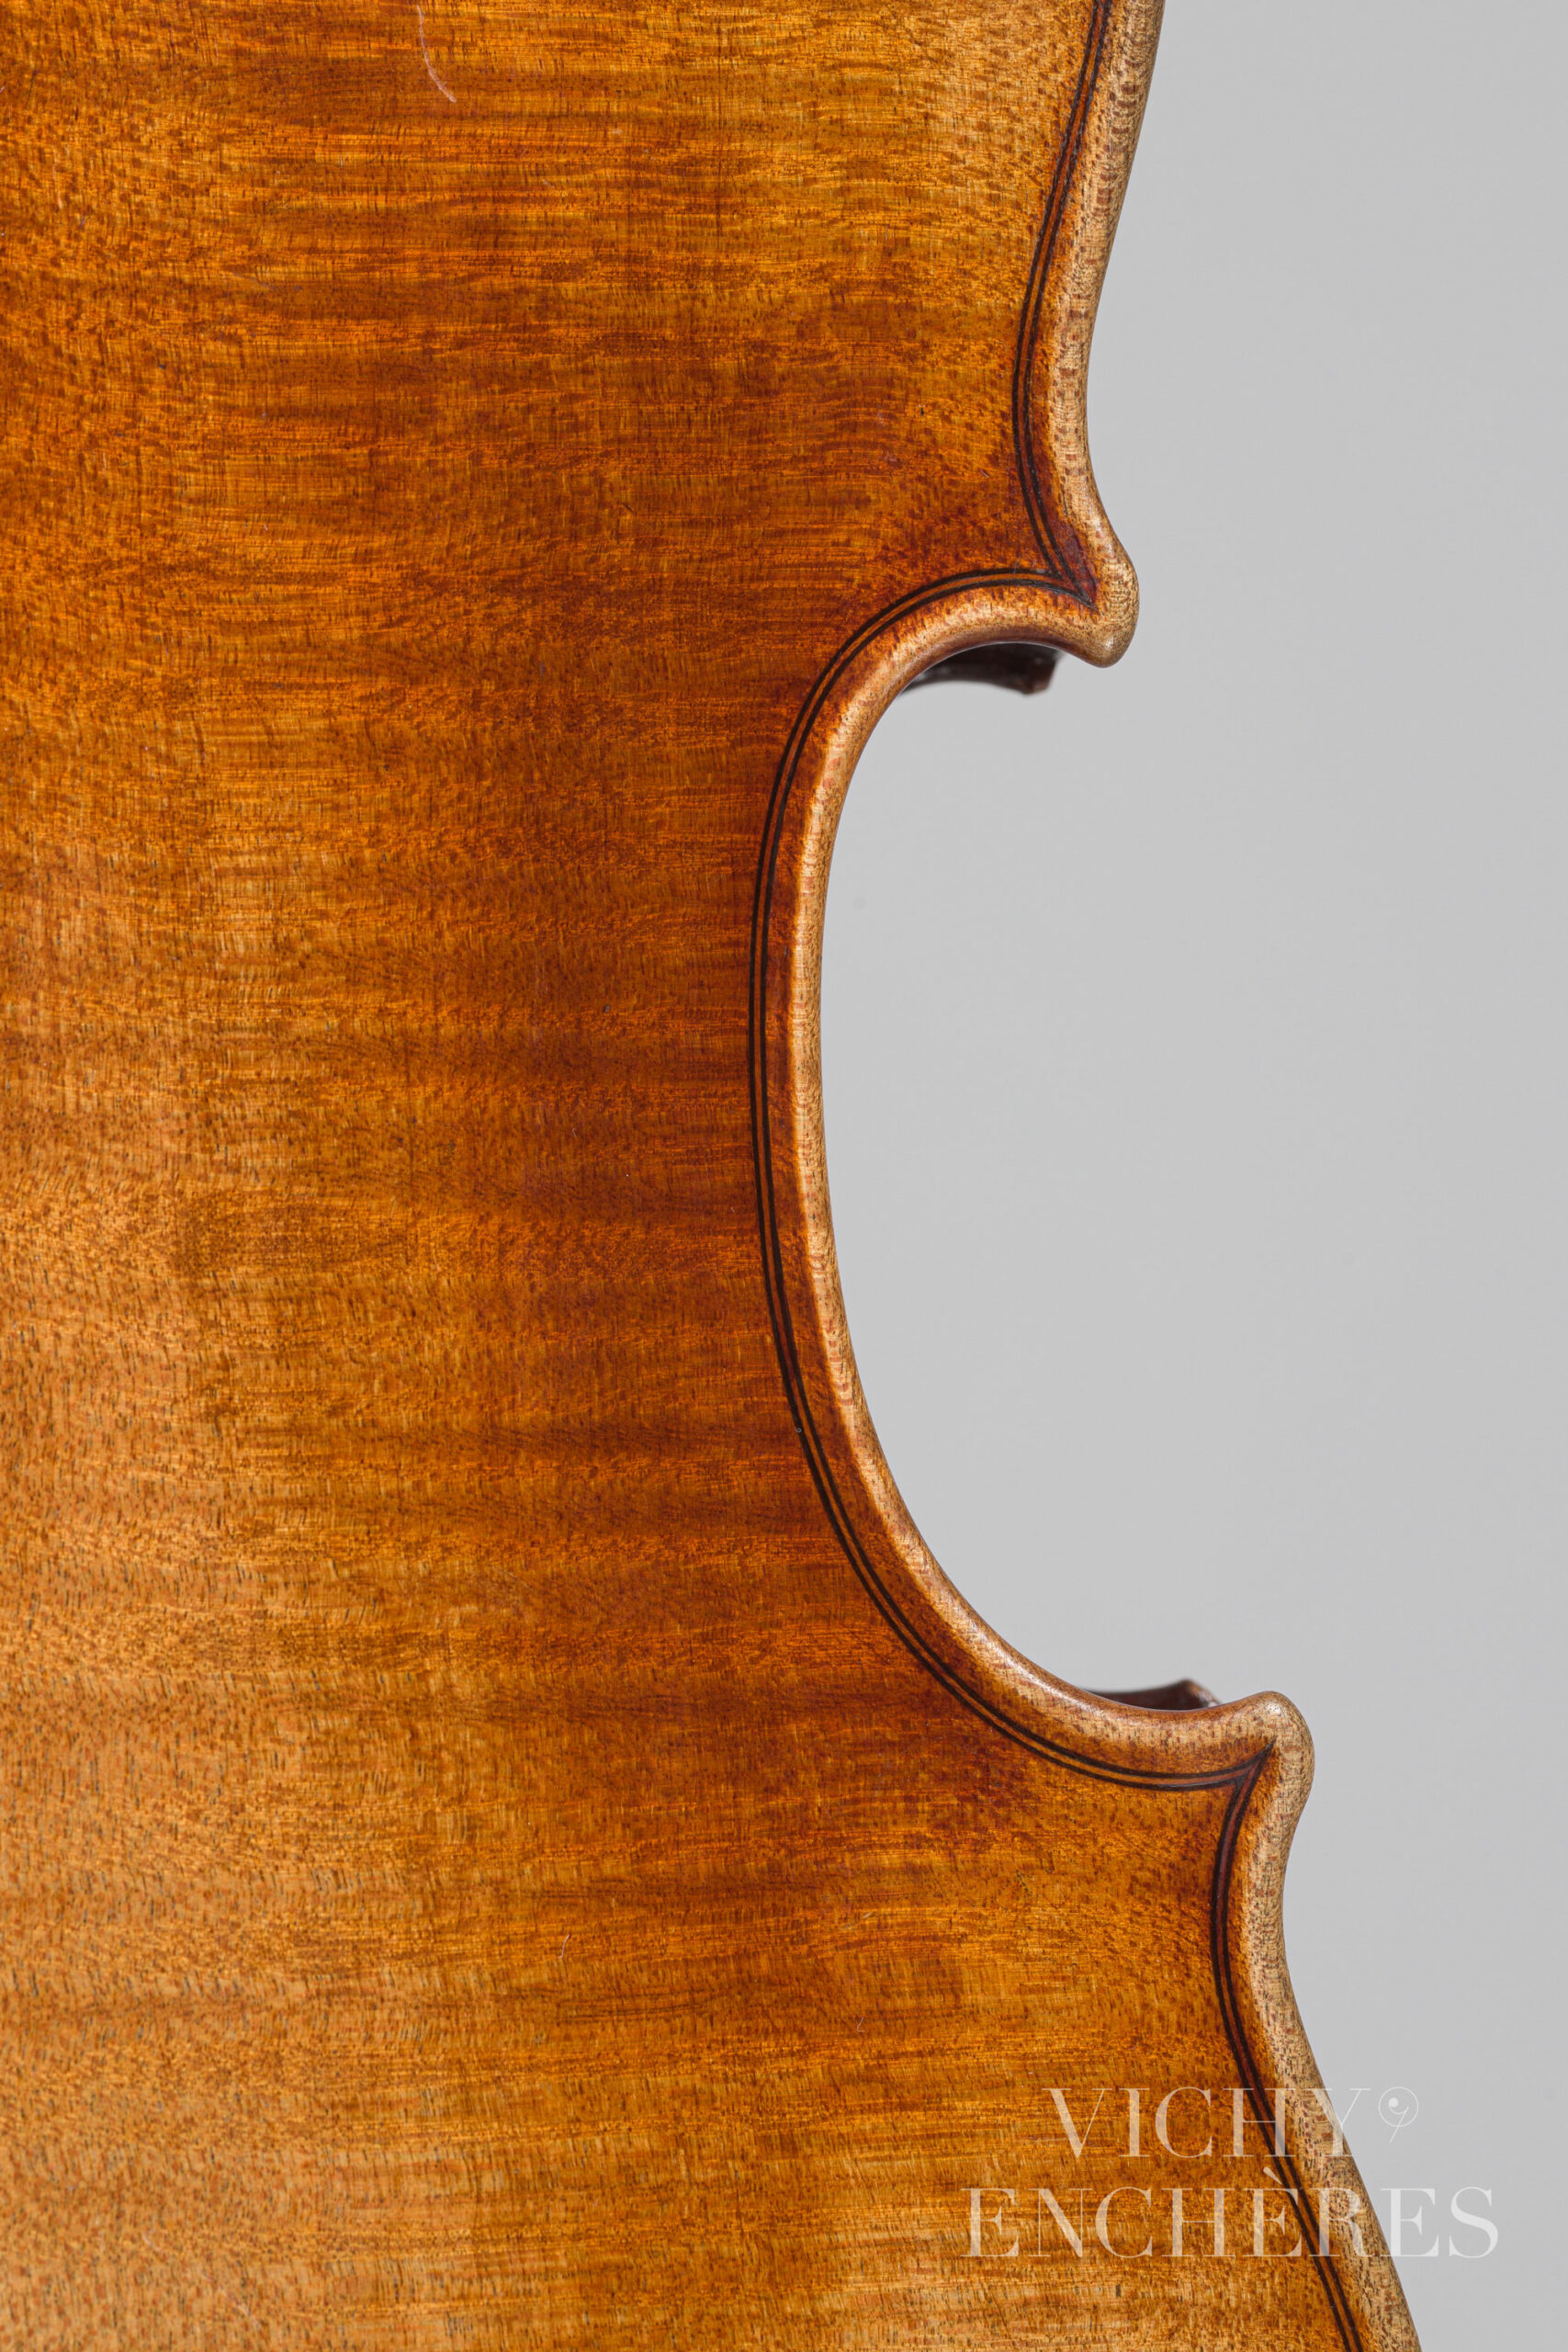 Violon de Claude Augustin MIREMONT Instrument mis en vente par Vichy Enchères le 1er décembre 2022 © Christophe Darbelet